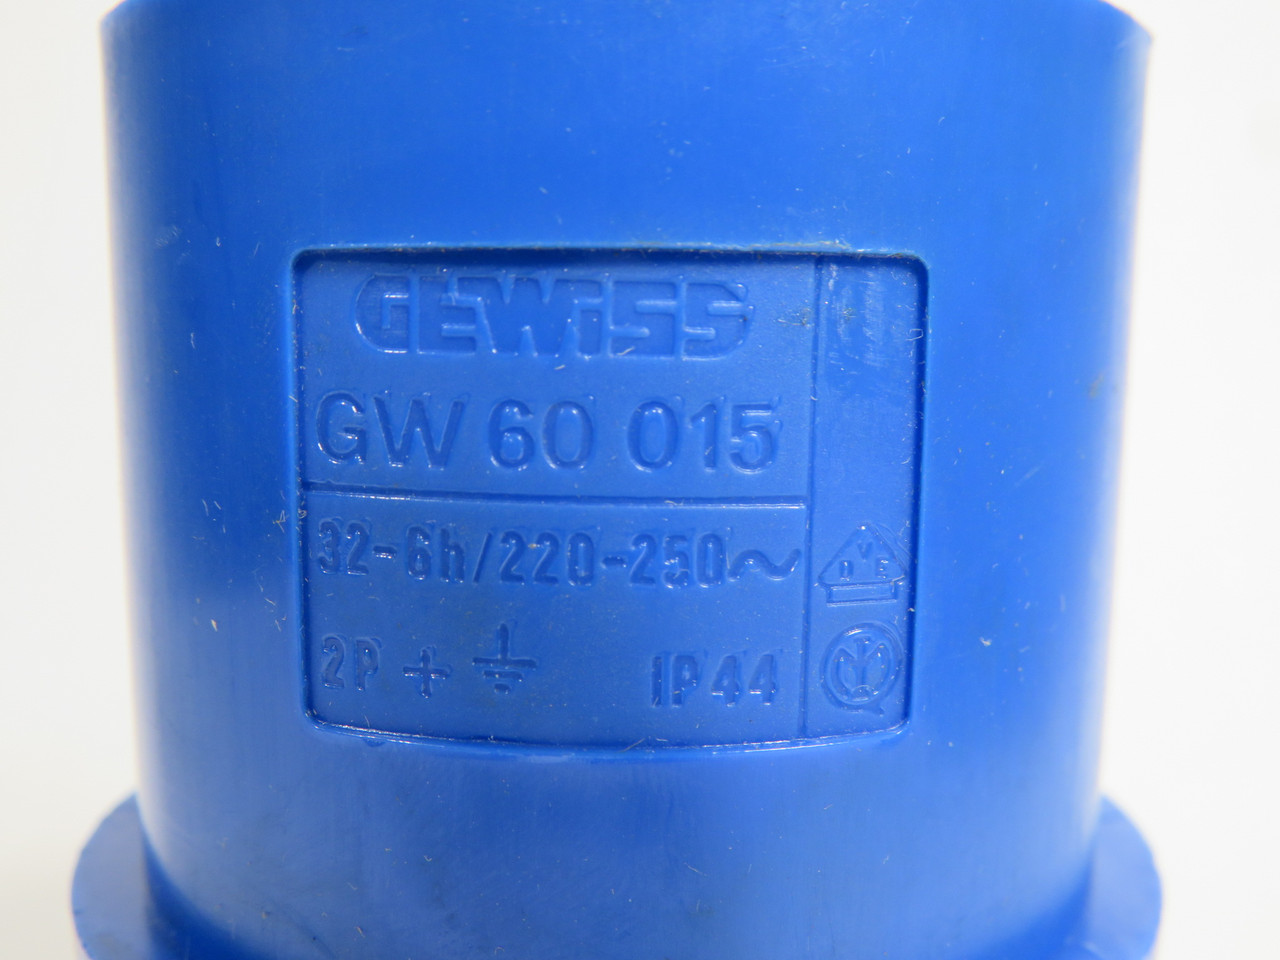 Gewiss GW60015 CEE Plug 32A 220-250V 3-Pole (2-Pole+G) 6h USED